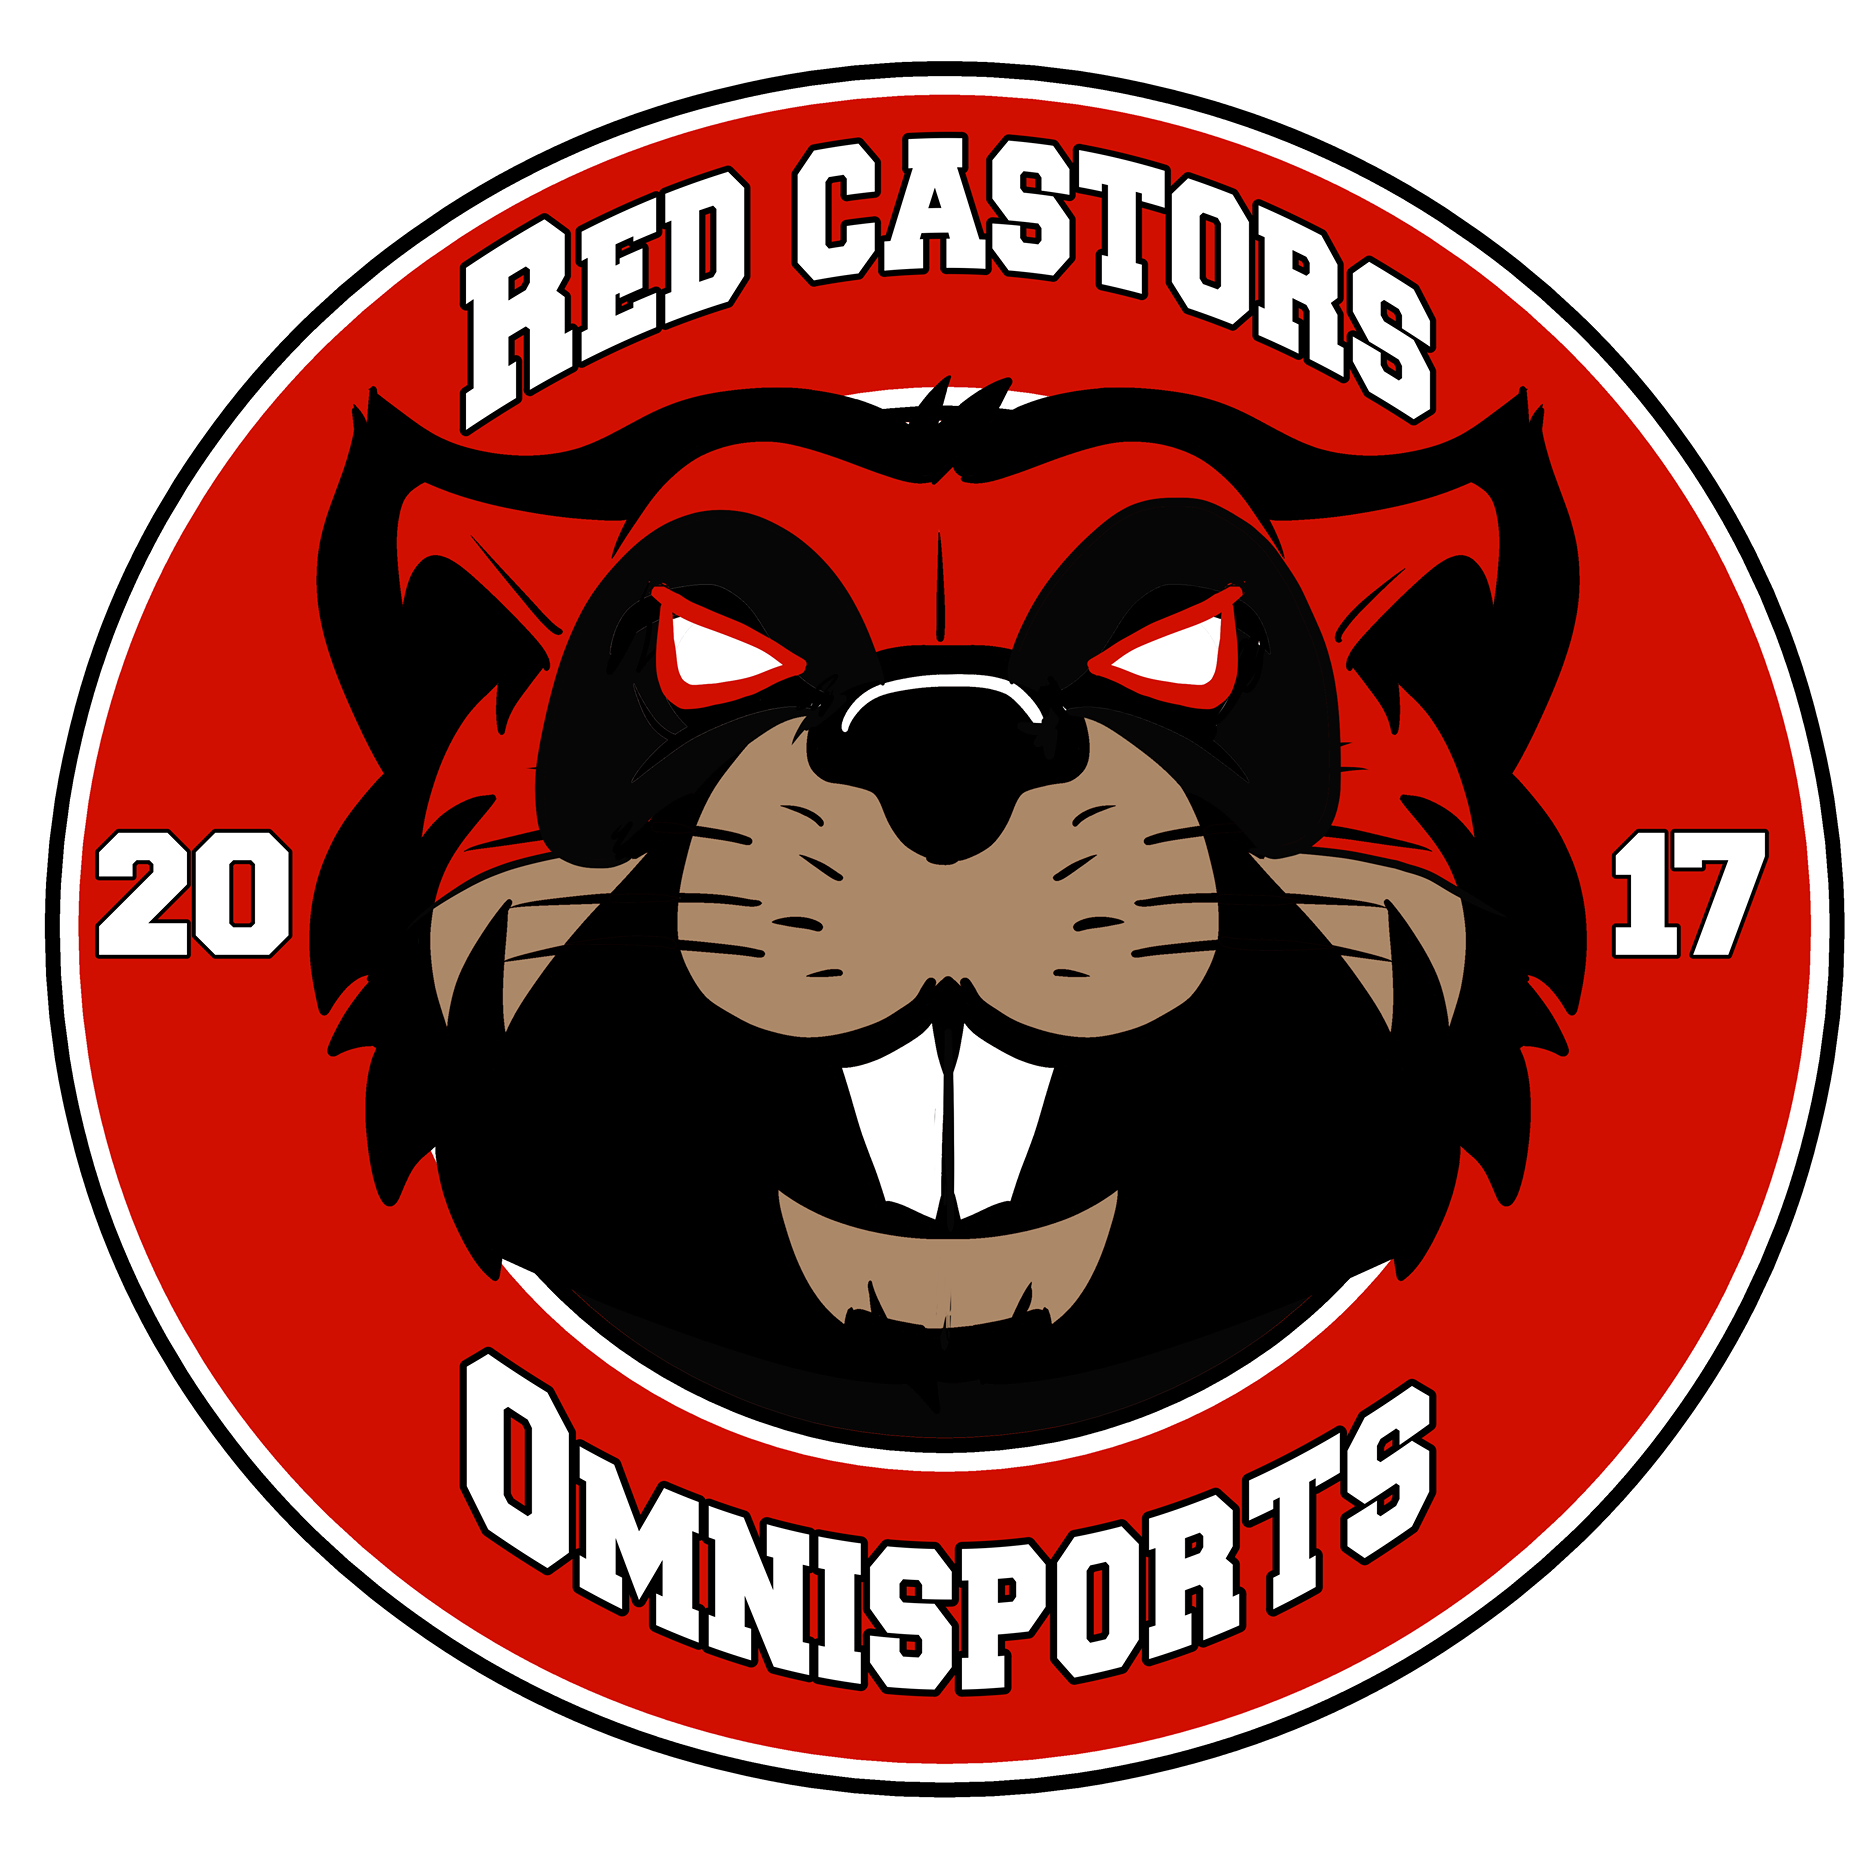 Red Castors Omnisports